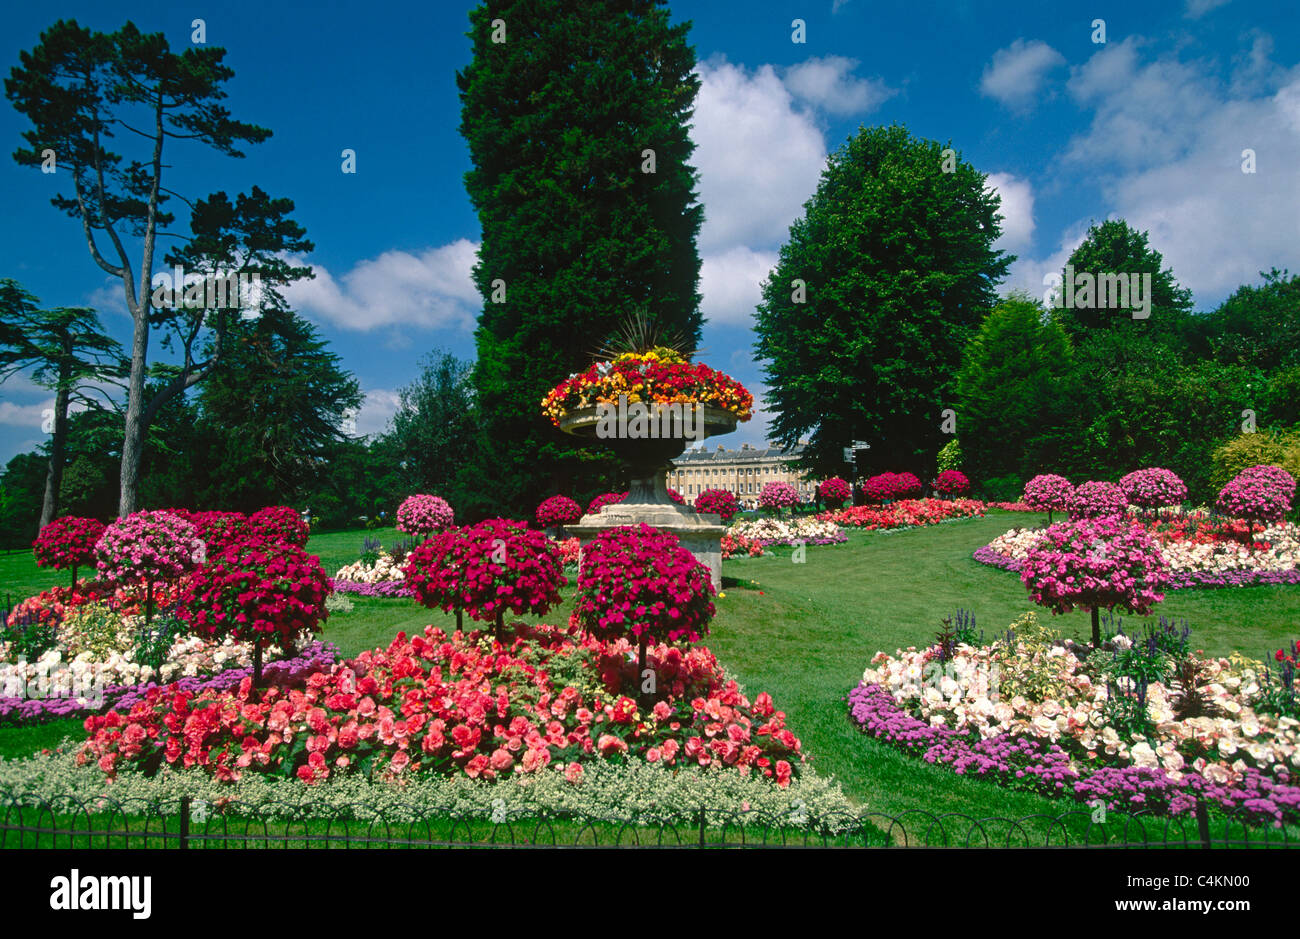 Bath, Inghilterra, Fiori, Giardino, Turismo alberi nuvole bianche prato rose parco rilassante giro turistico incantevole giorno d'estate fiori arrangiamento giardino d'arte Foto Stock